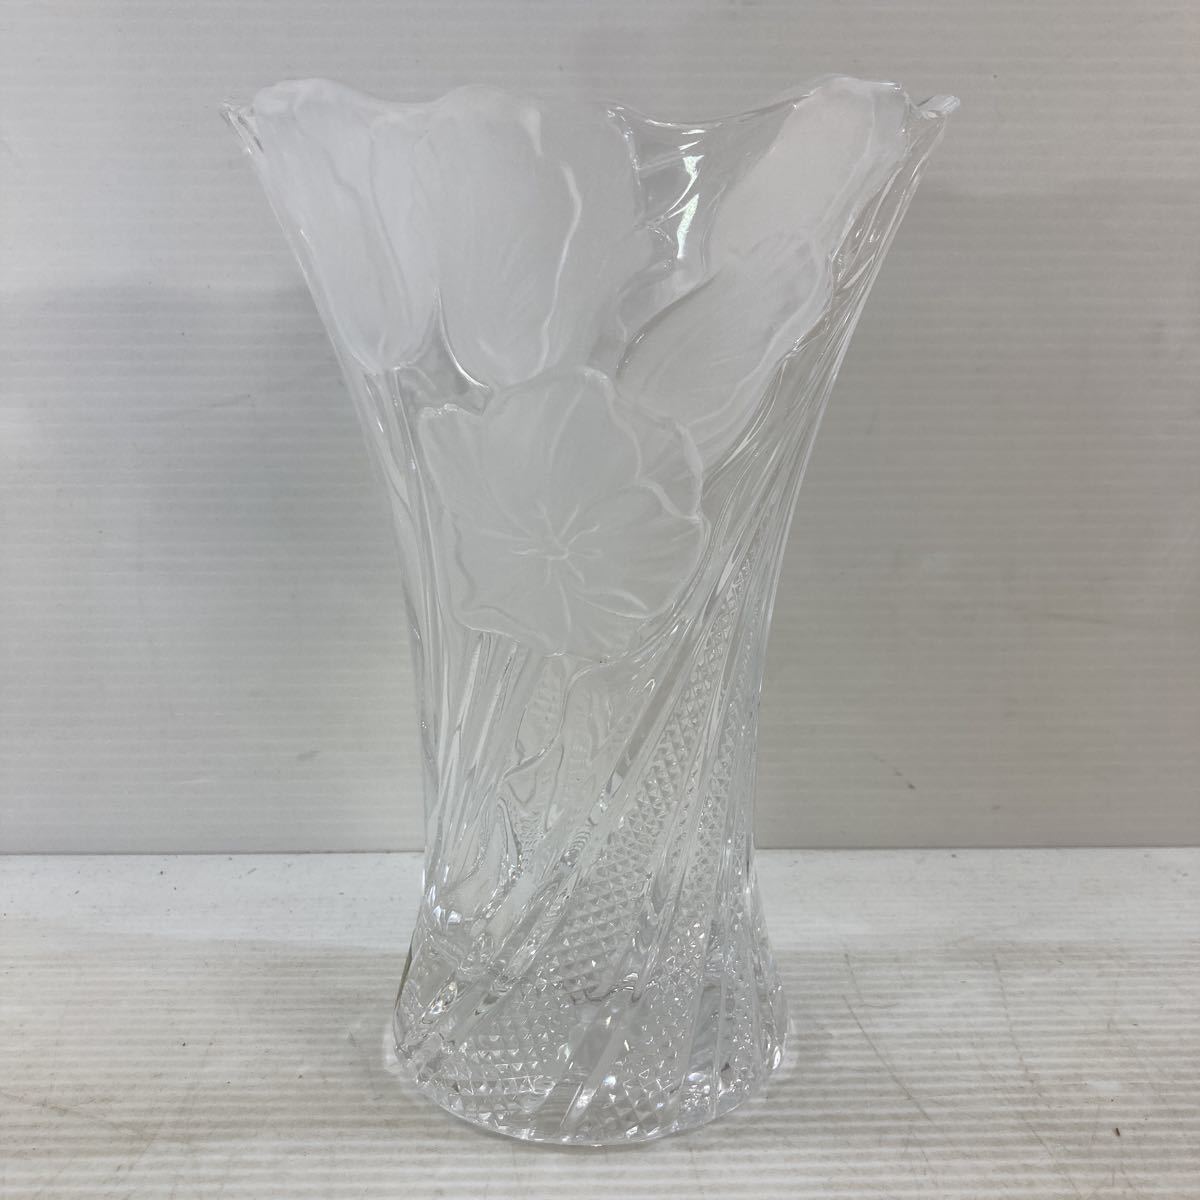 8250円 最新最全の 256花器 フラワーベース クリスタルガラス製